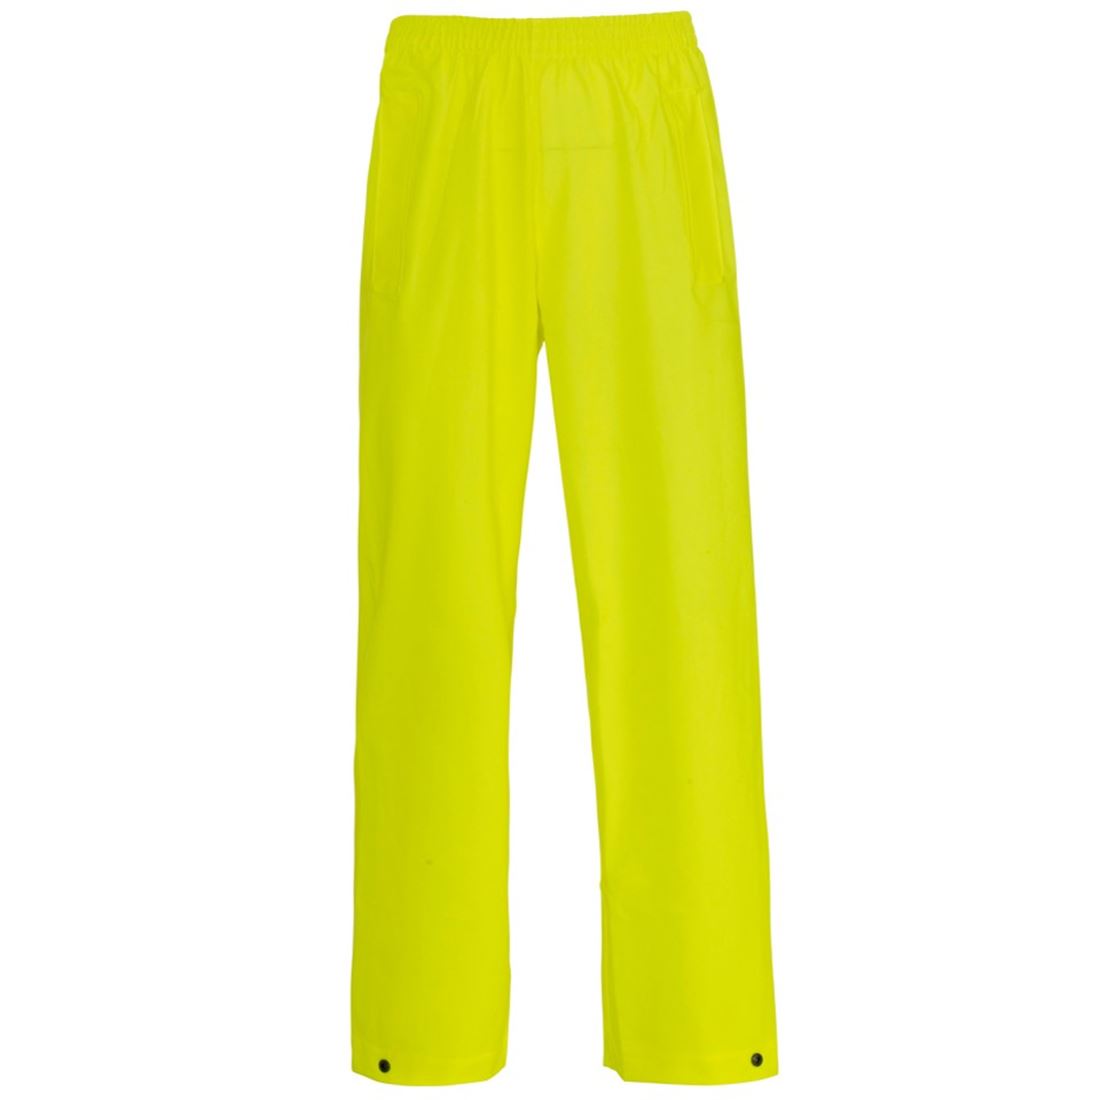 Plain Full Length Breathable Work Trouser Yellow